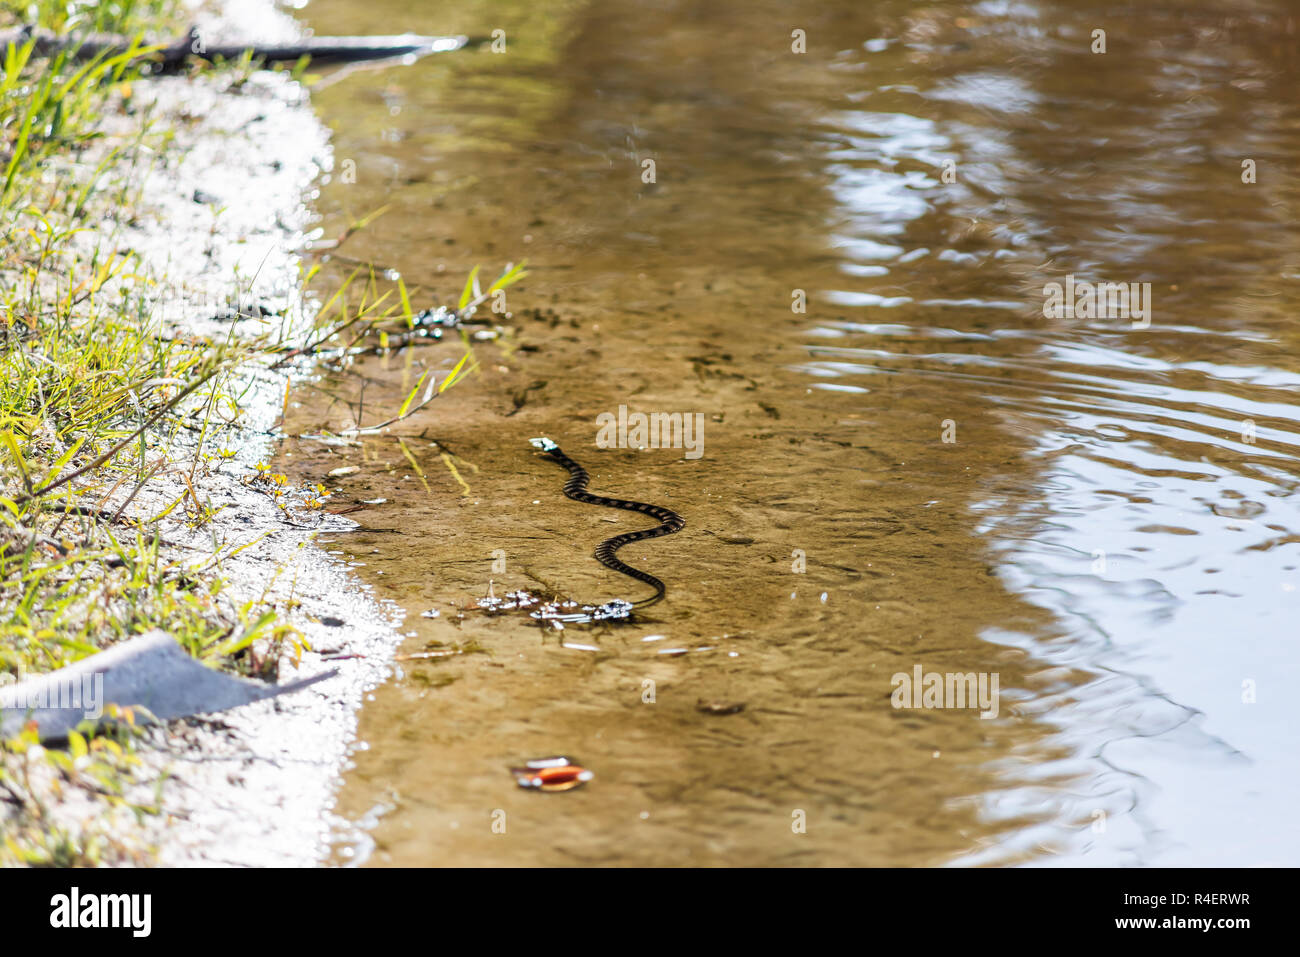 Un serpent d'eau piscine sud bagués dans trou profond célèbre lac alligator pond dans Myakka River State Park, Sarasota, Floride, dans l'eau Banque D'Images